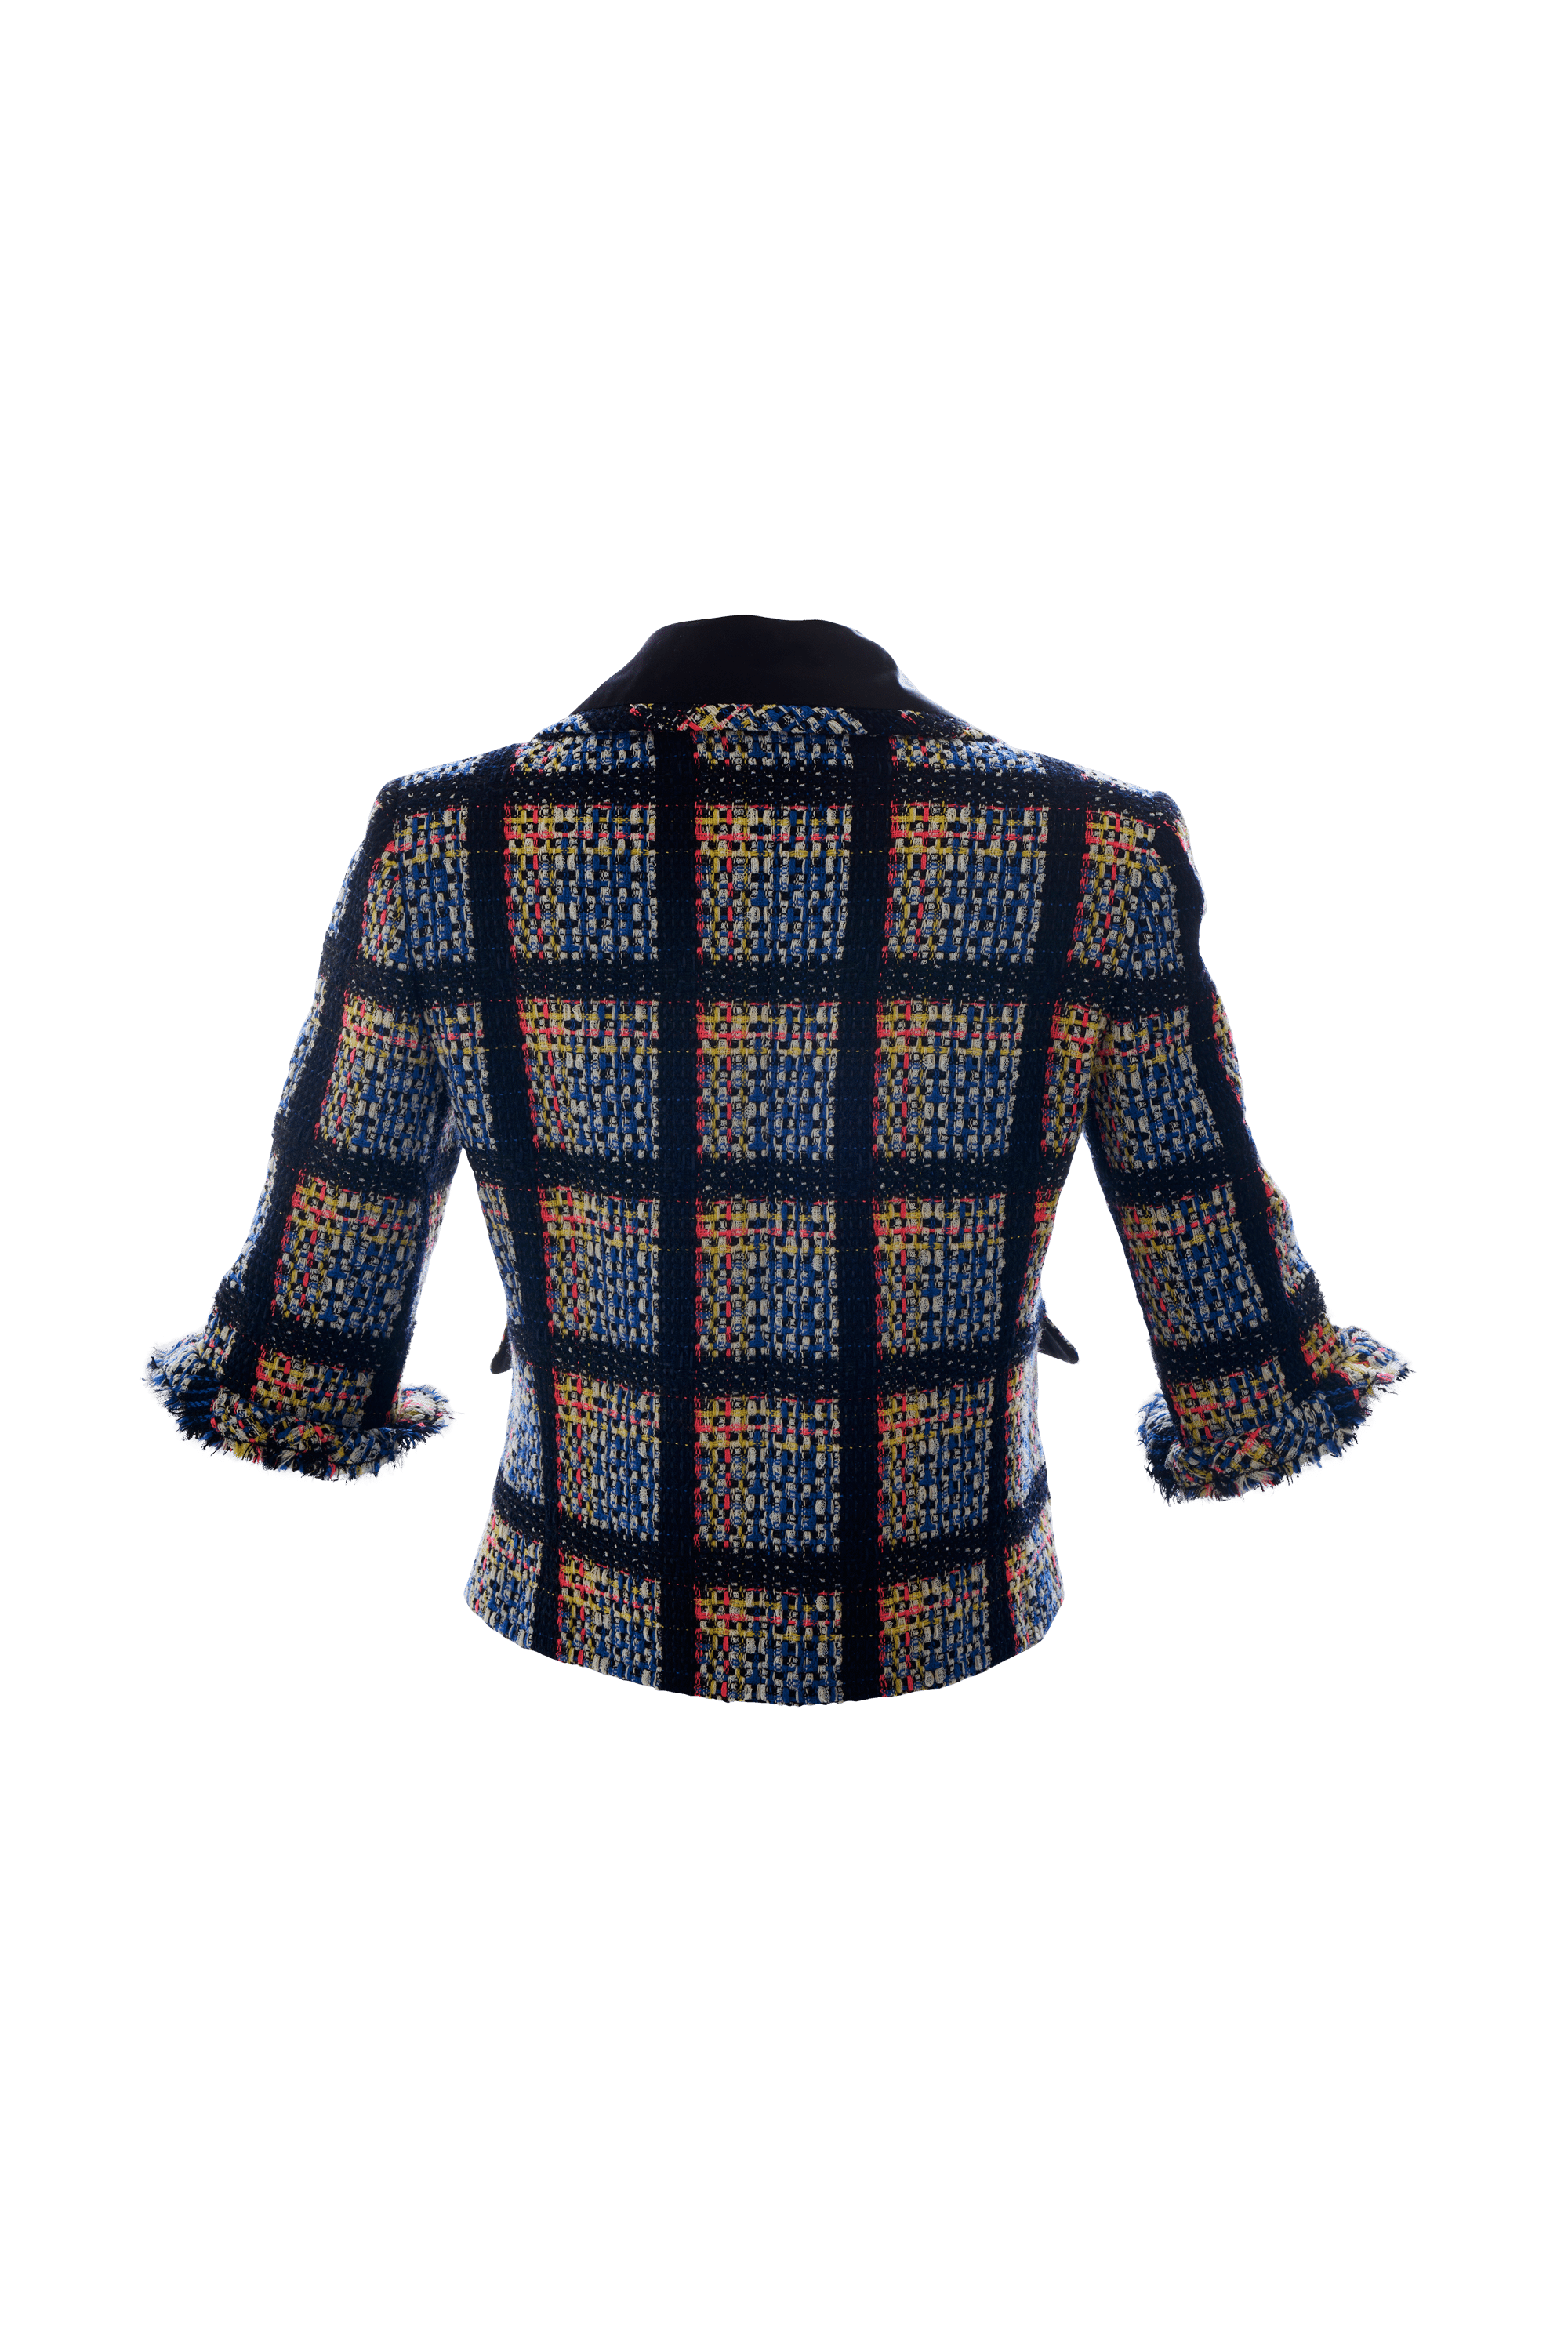 Chanel Short Sleeve Tweed Jacket